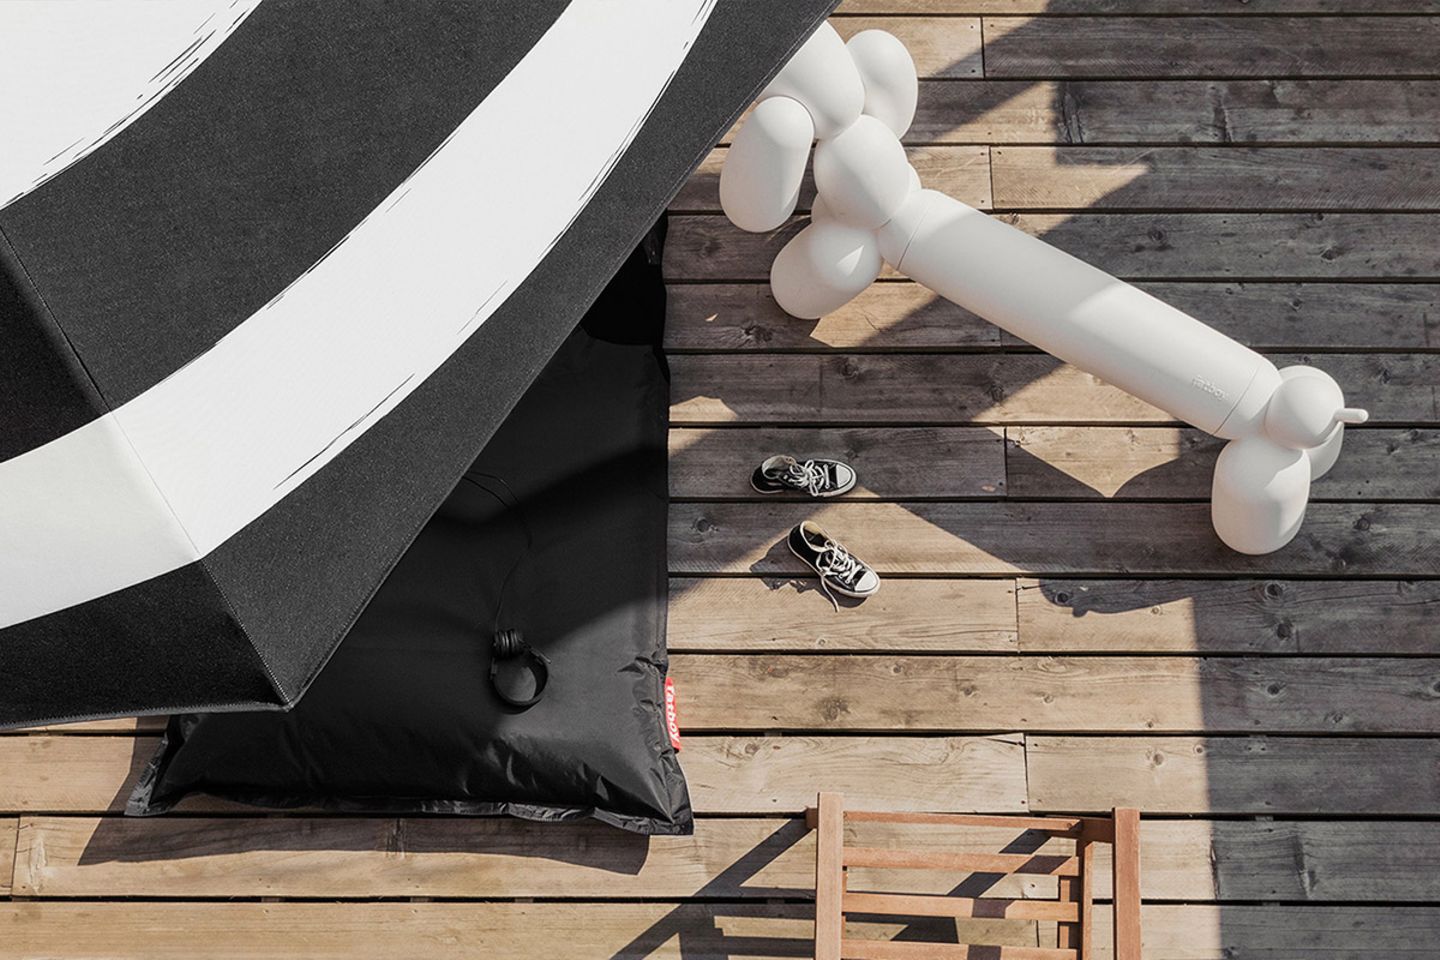 Sitzbank "Attackle" von Fatboy, die aussieht wie eine Ballonfigur in Dackelform, neben einem schwarzen Sitzsack und einem Sonne…